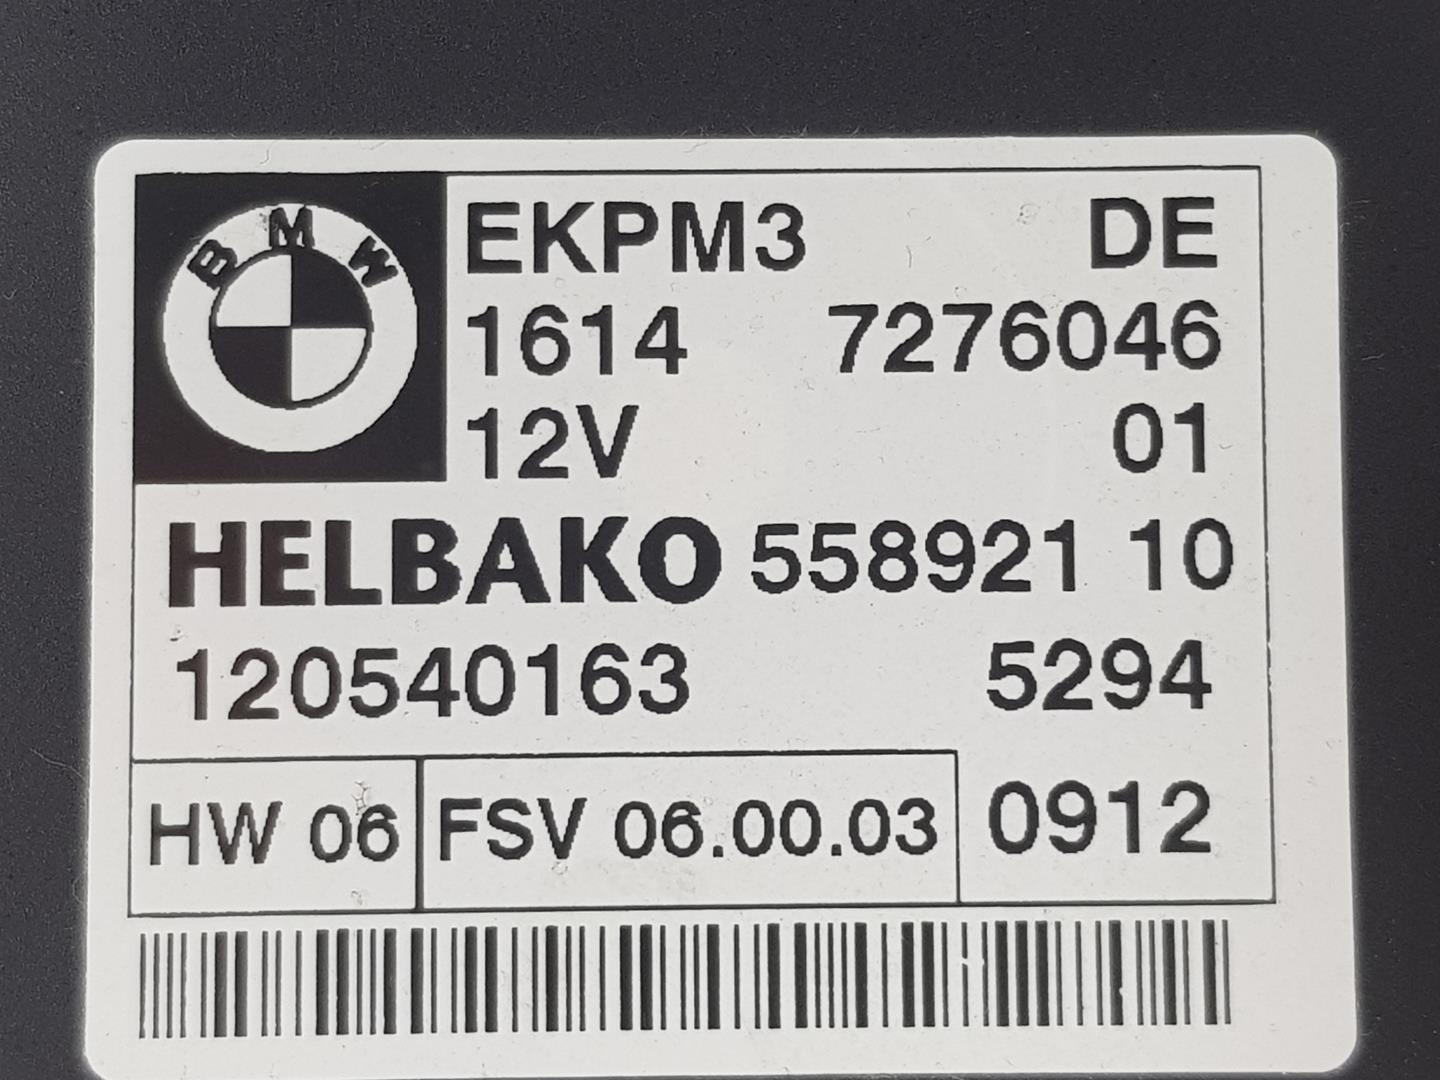 BMW 3 Series E90/E91/E92/E93 (2004-2013) Other Control Units 16147276046, 7276046 19927079